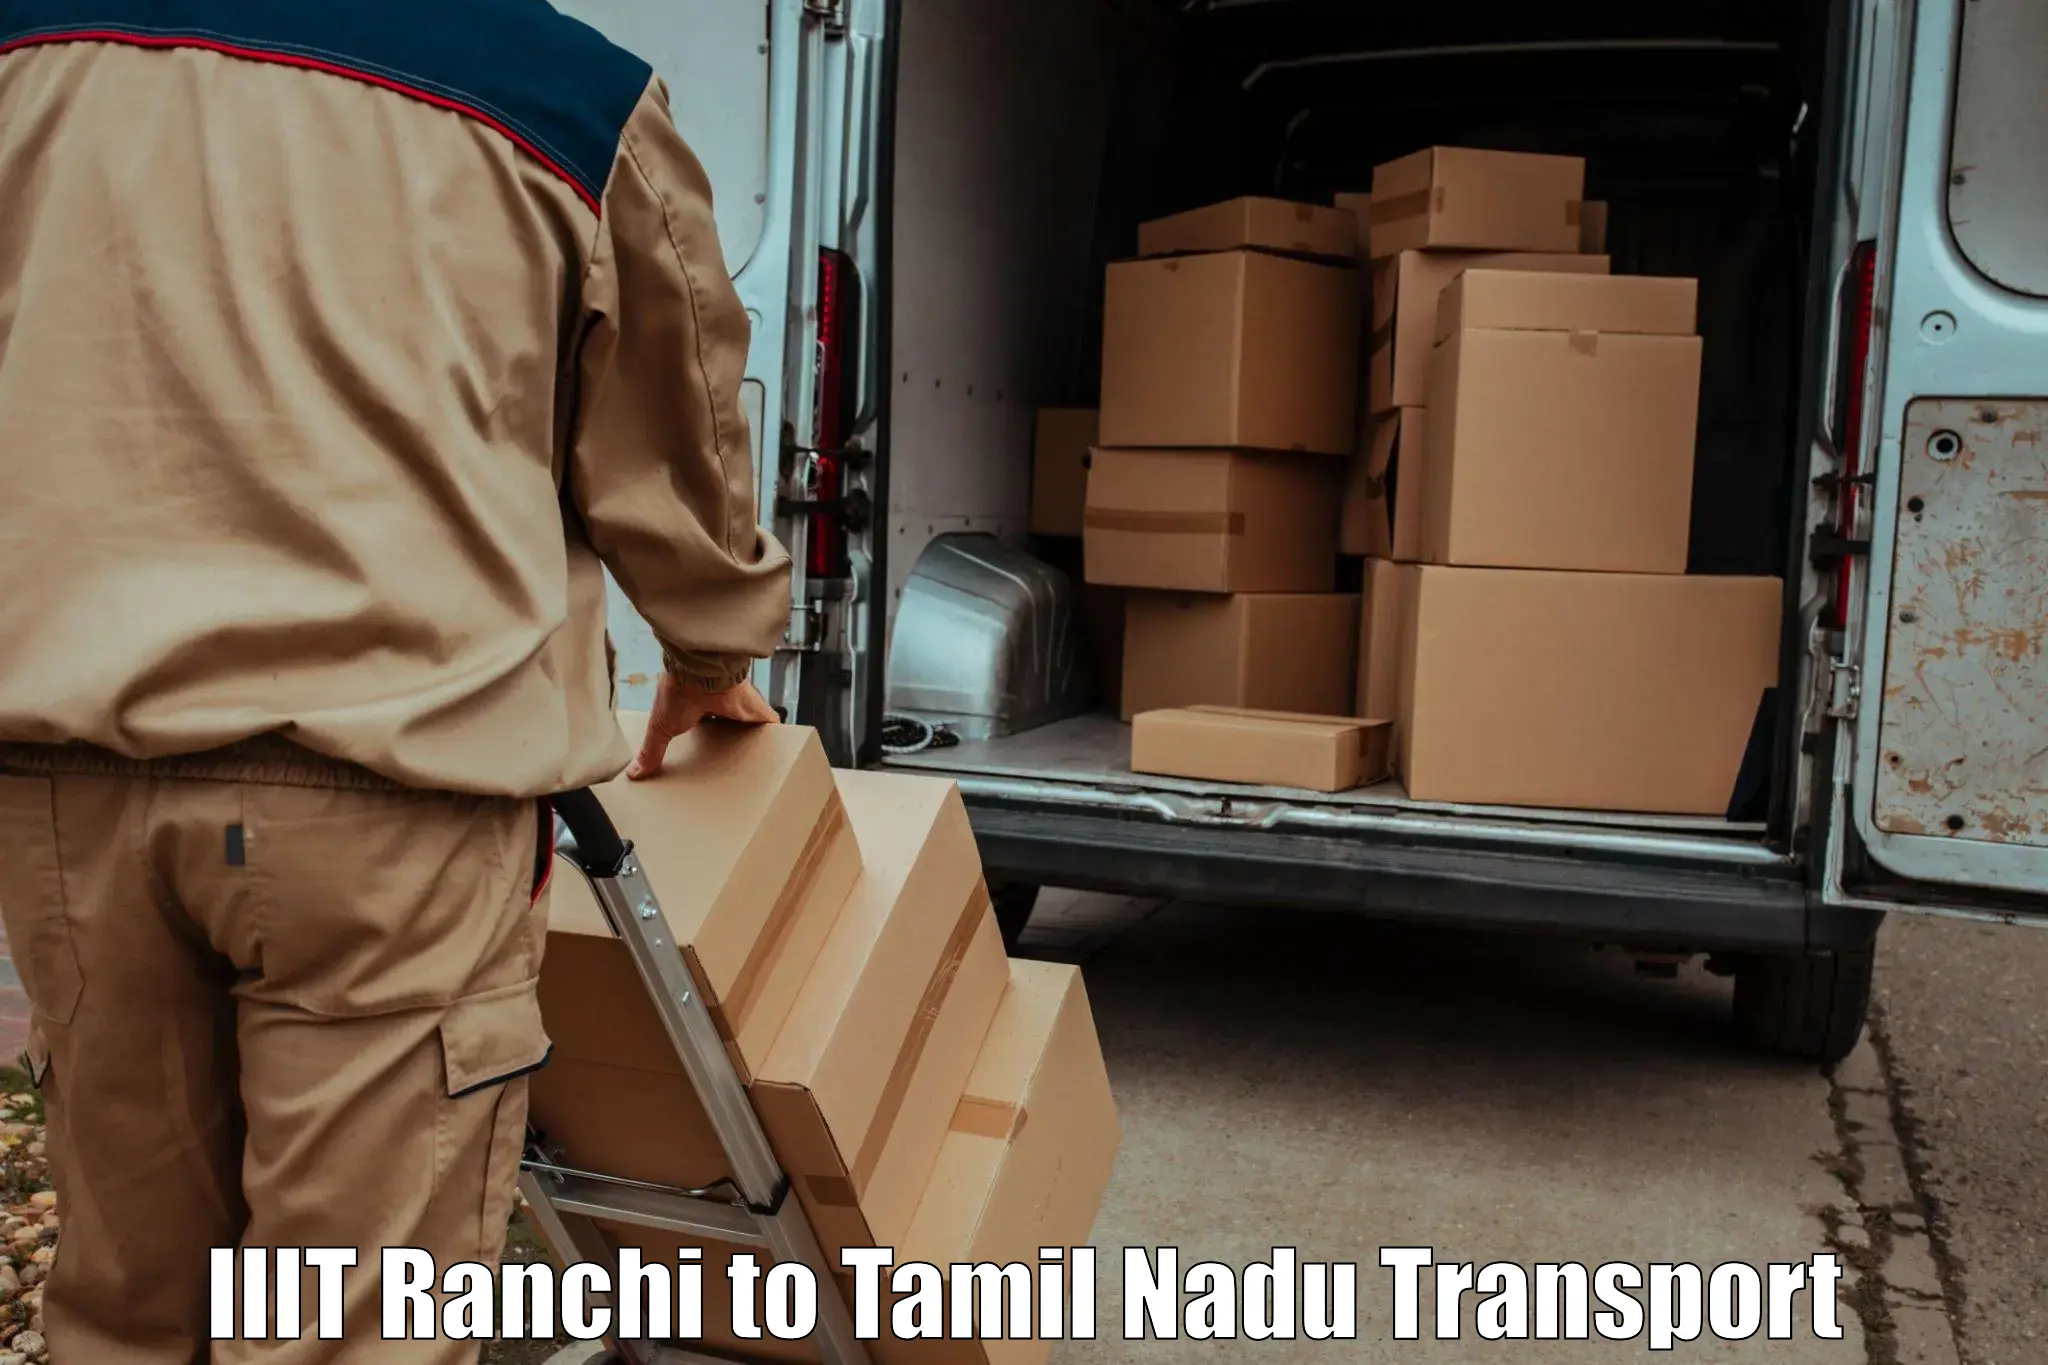 Bike transport service IIIT Ranchi to Tamil Nadu